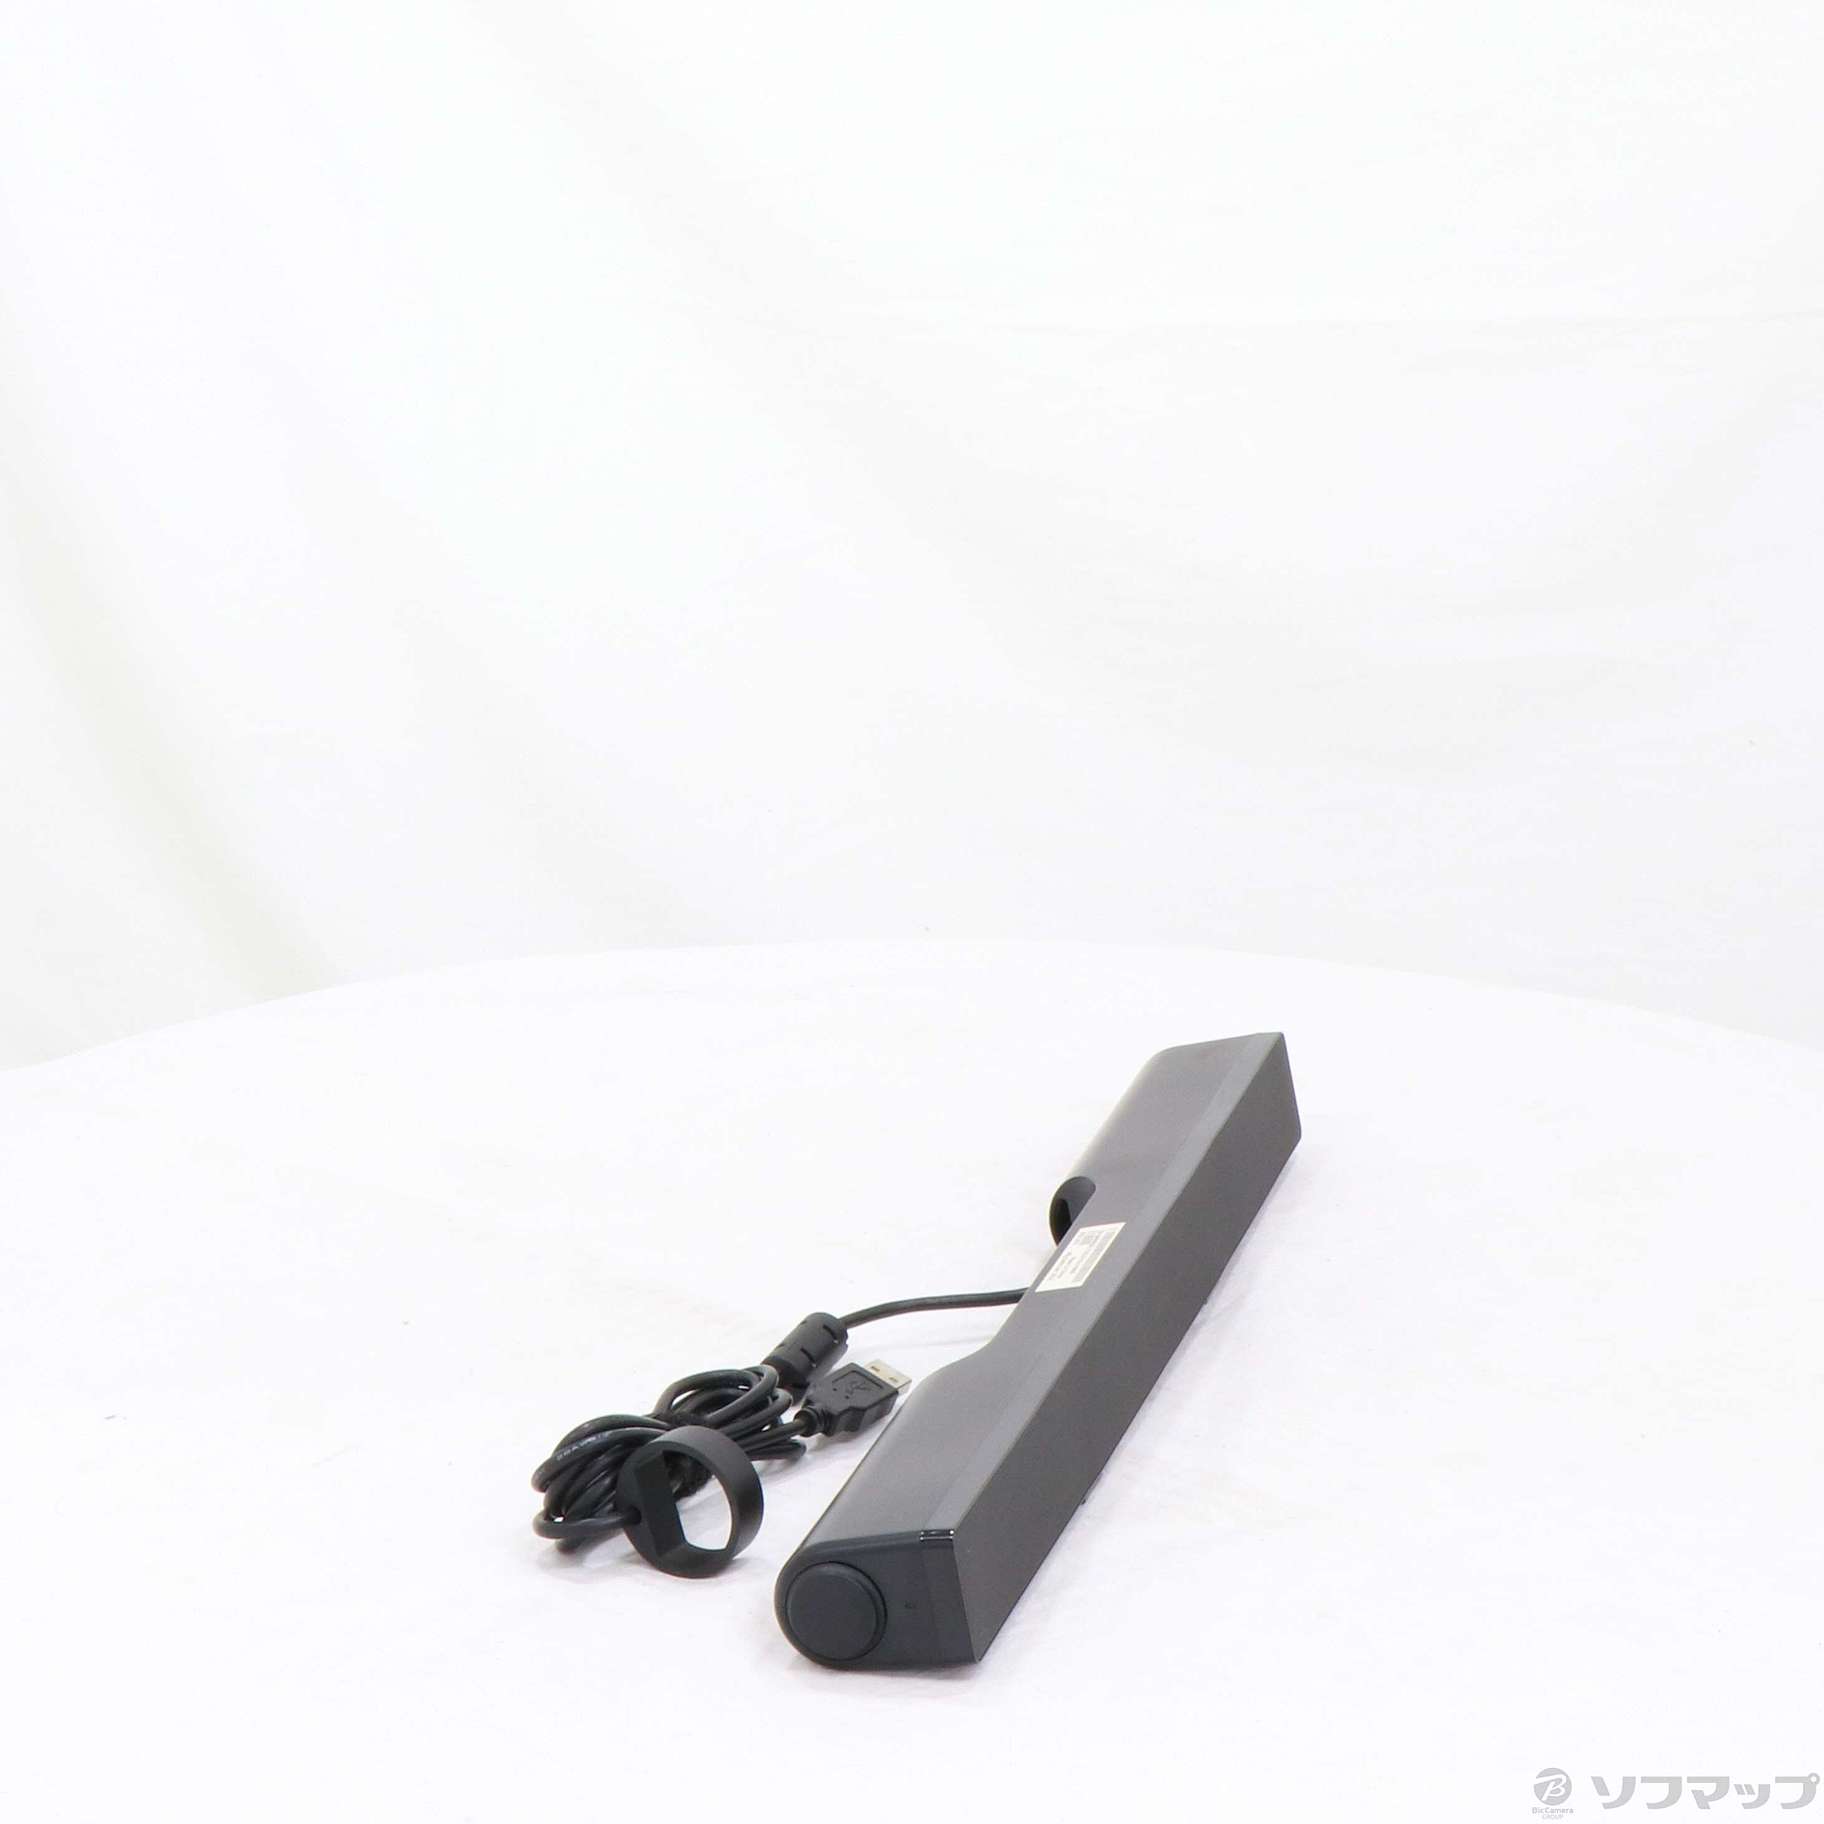 【新着商品】Dell Stereo USB SoundBar AC511